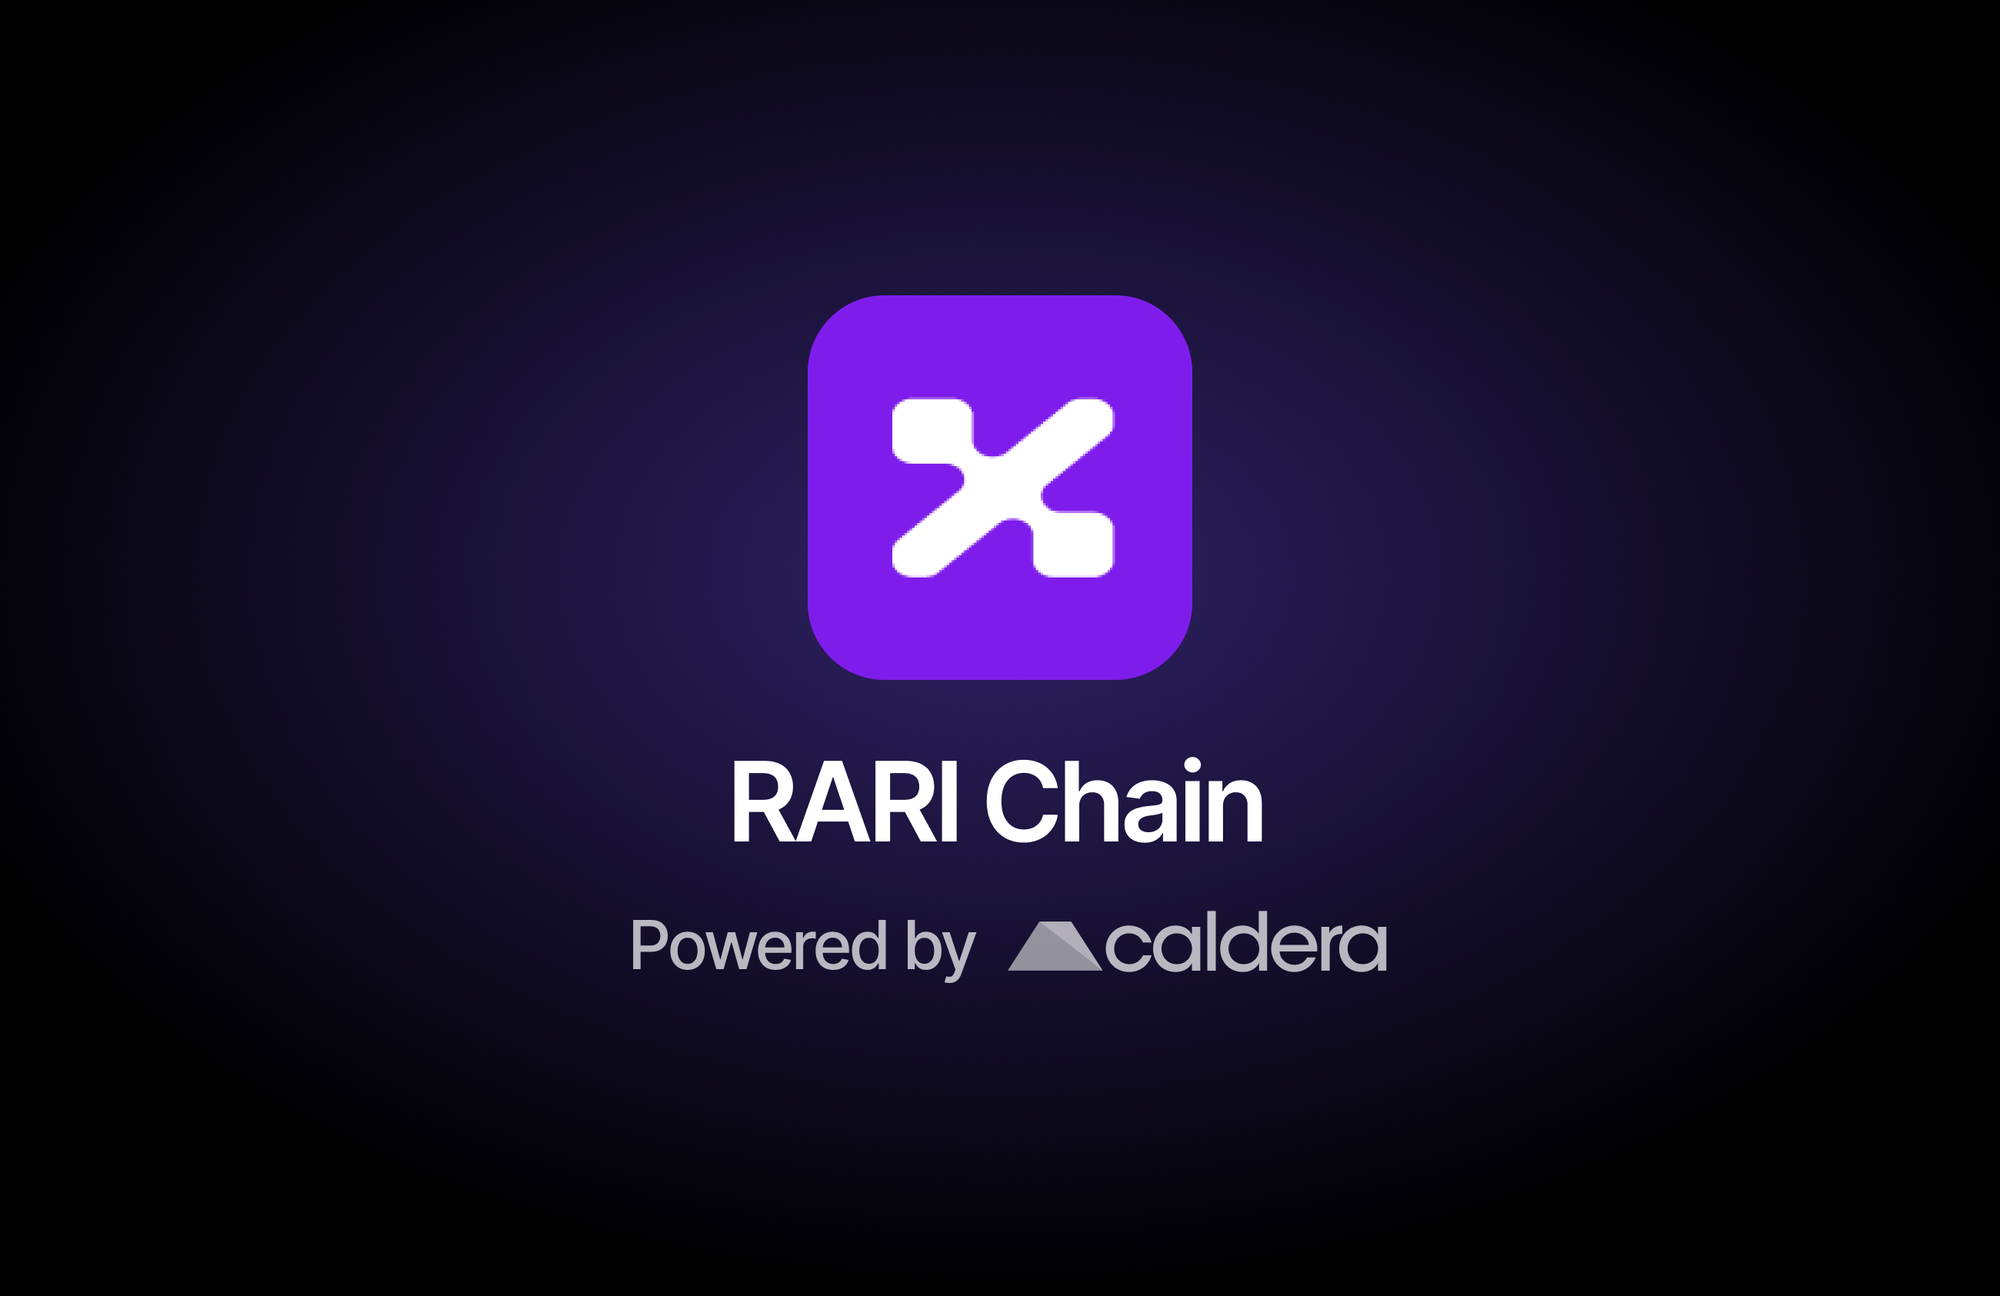 Caldera partners with RARI Foundation to launch RARI Chain